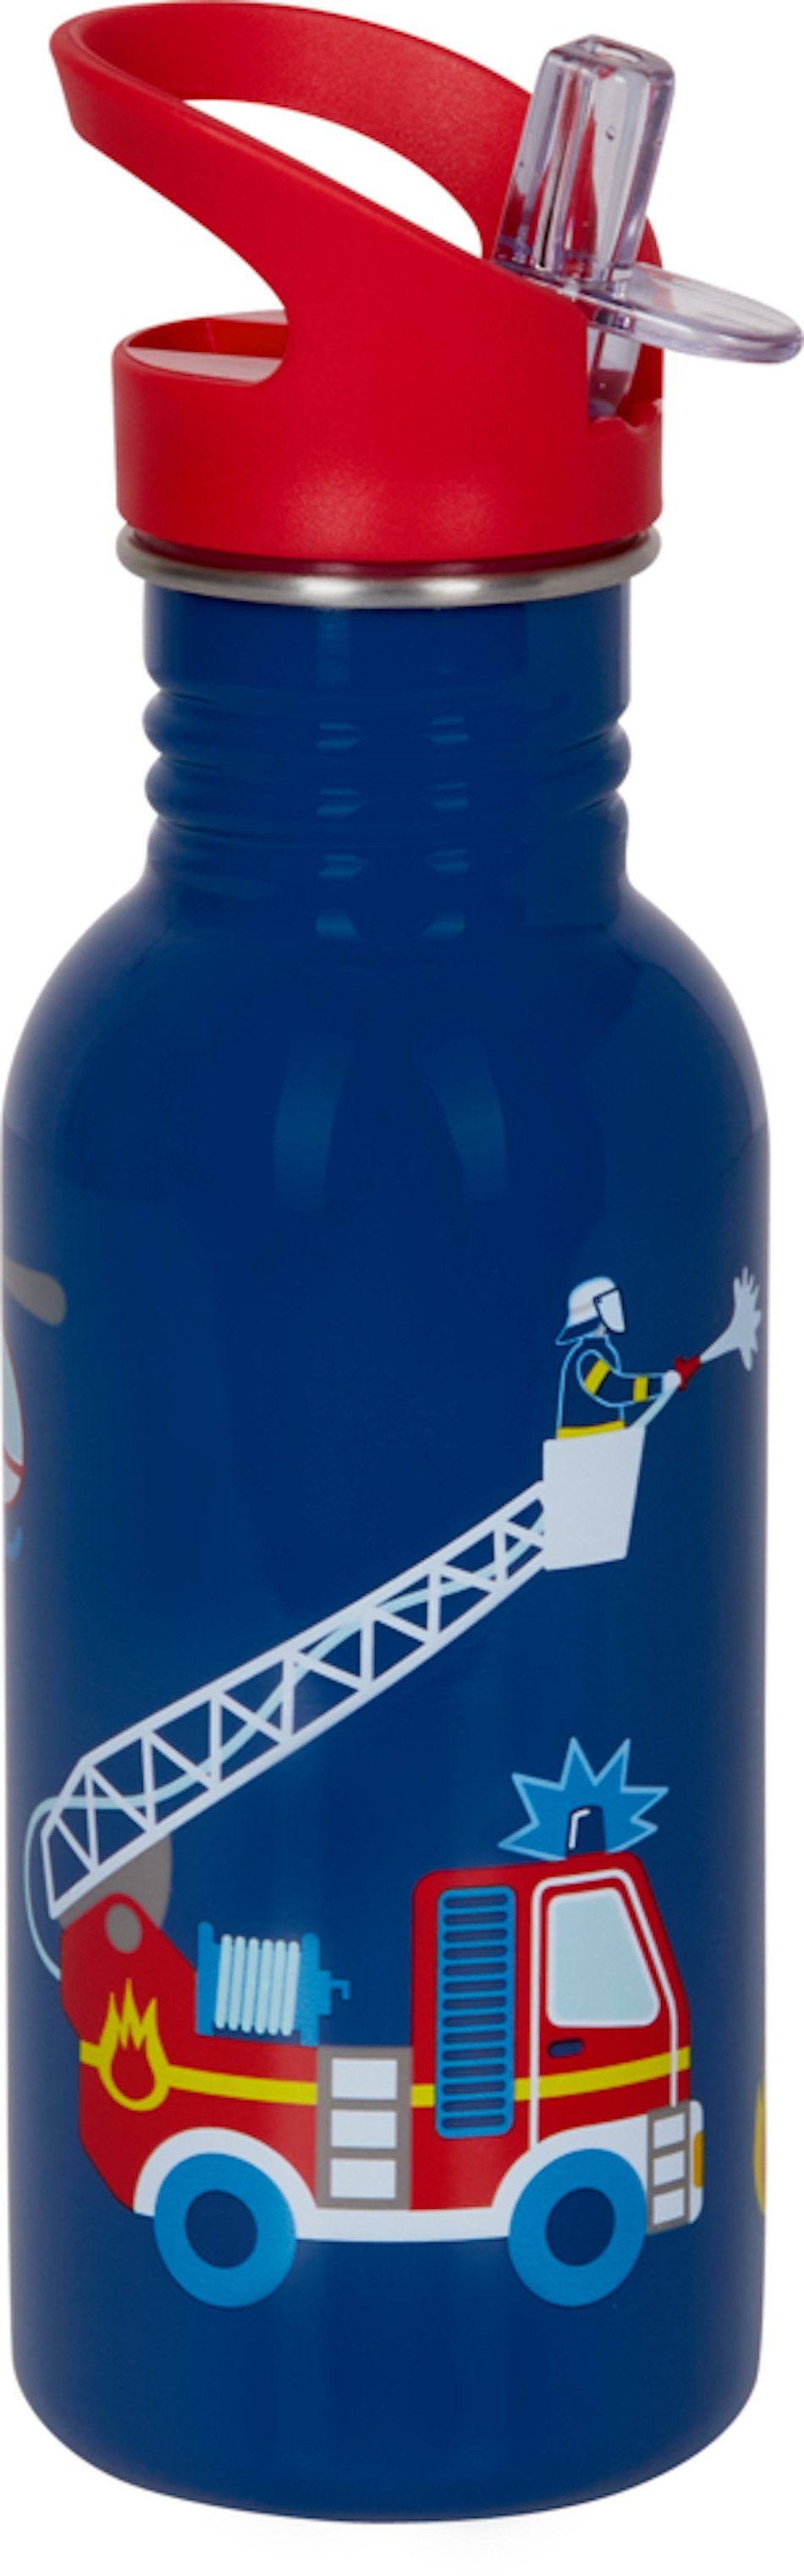 COPPENRATH DIE SPIEGELBURG Trinkflasche Edelstahlflasche Feuerwehr ca. 0,5 l Wenn ich mal groß bin, mit großer Trinköffnung